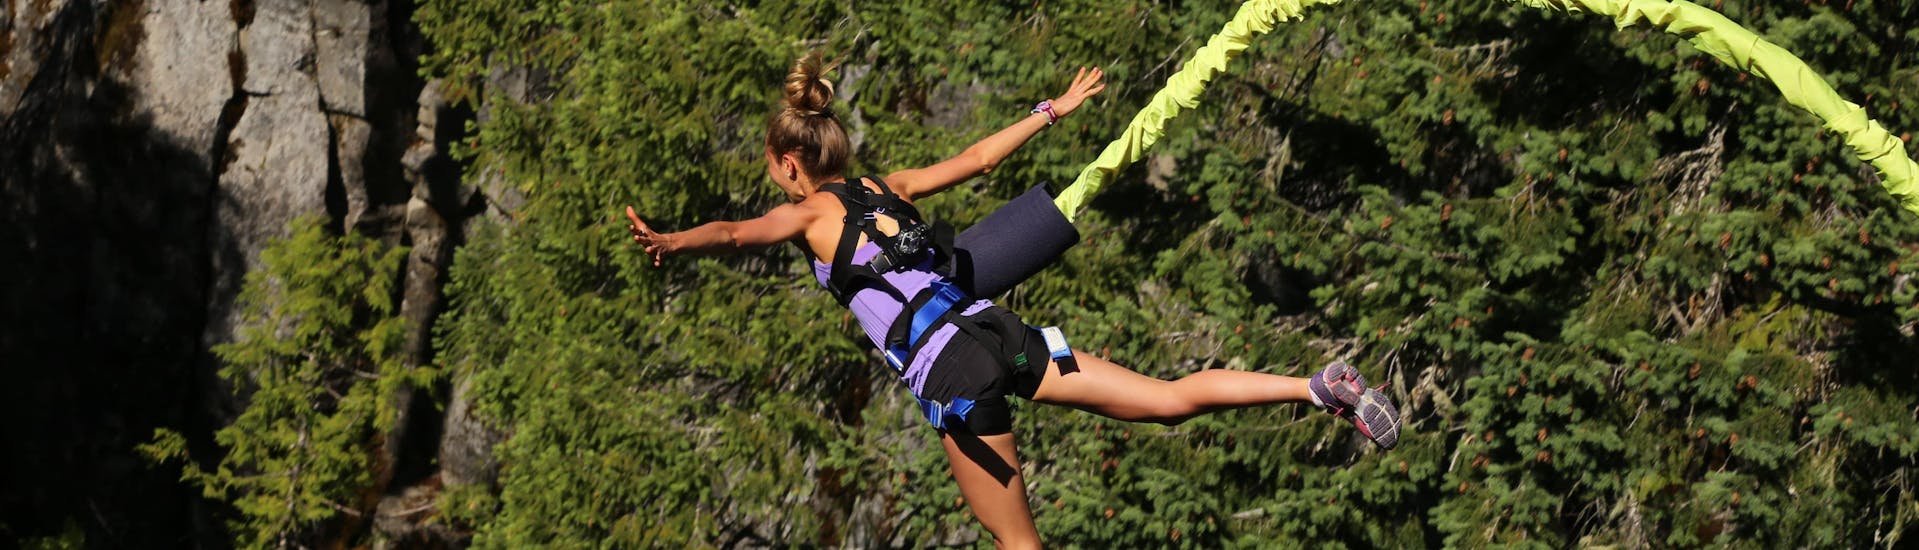 Una chica hace puenting en Novalja, uno de los sitios más populares para hacer bungee jumping. 